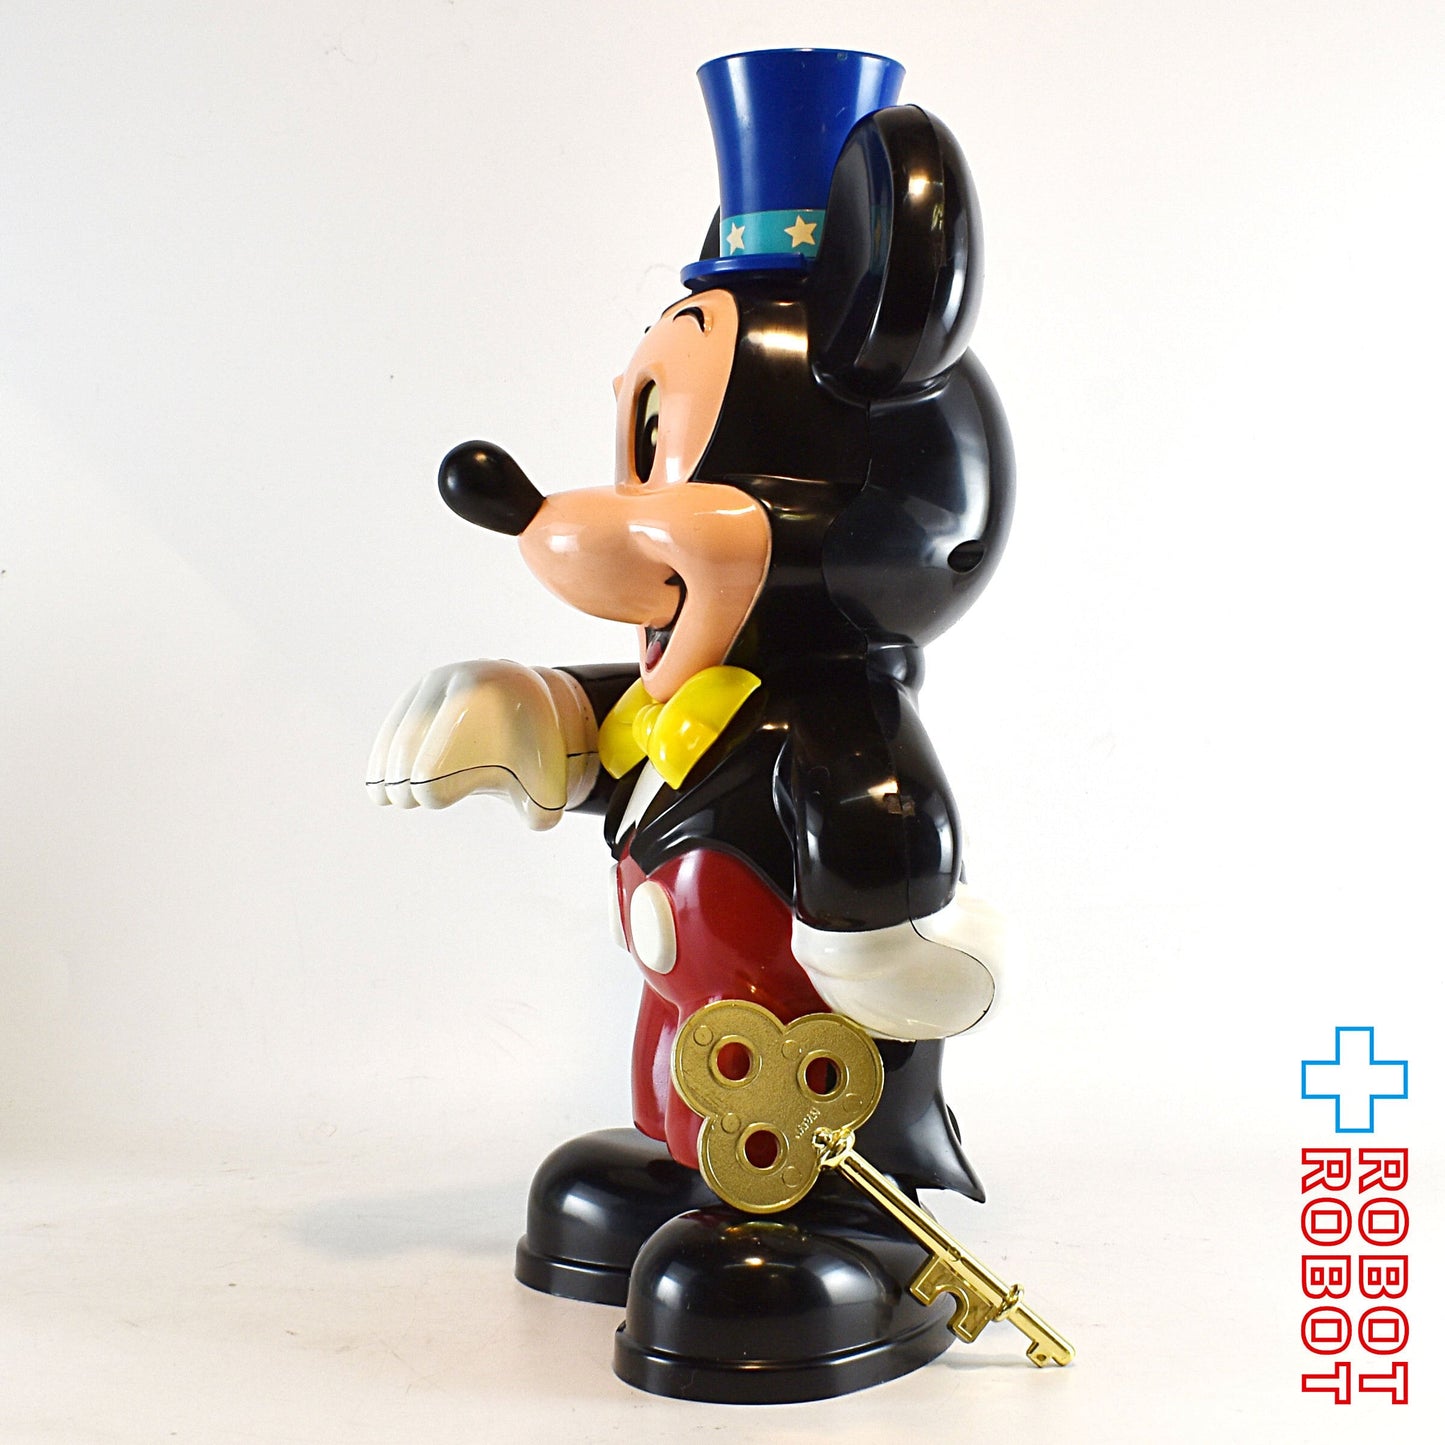 トミー ディズニー ミッキーマウス マジシャン 鍵付 プラスチック貯金箱フィギュア